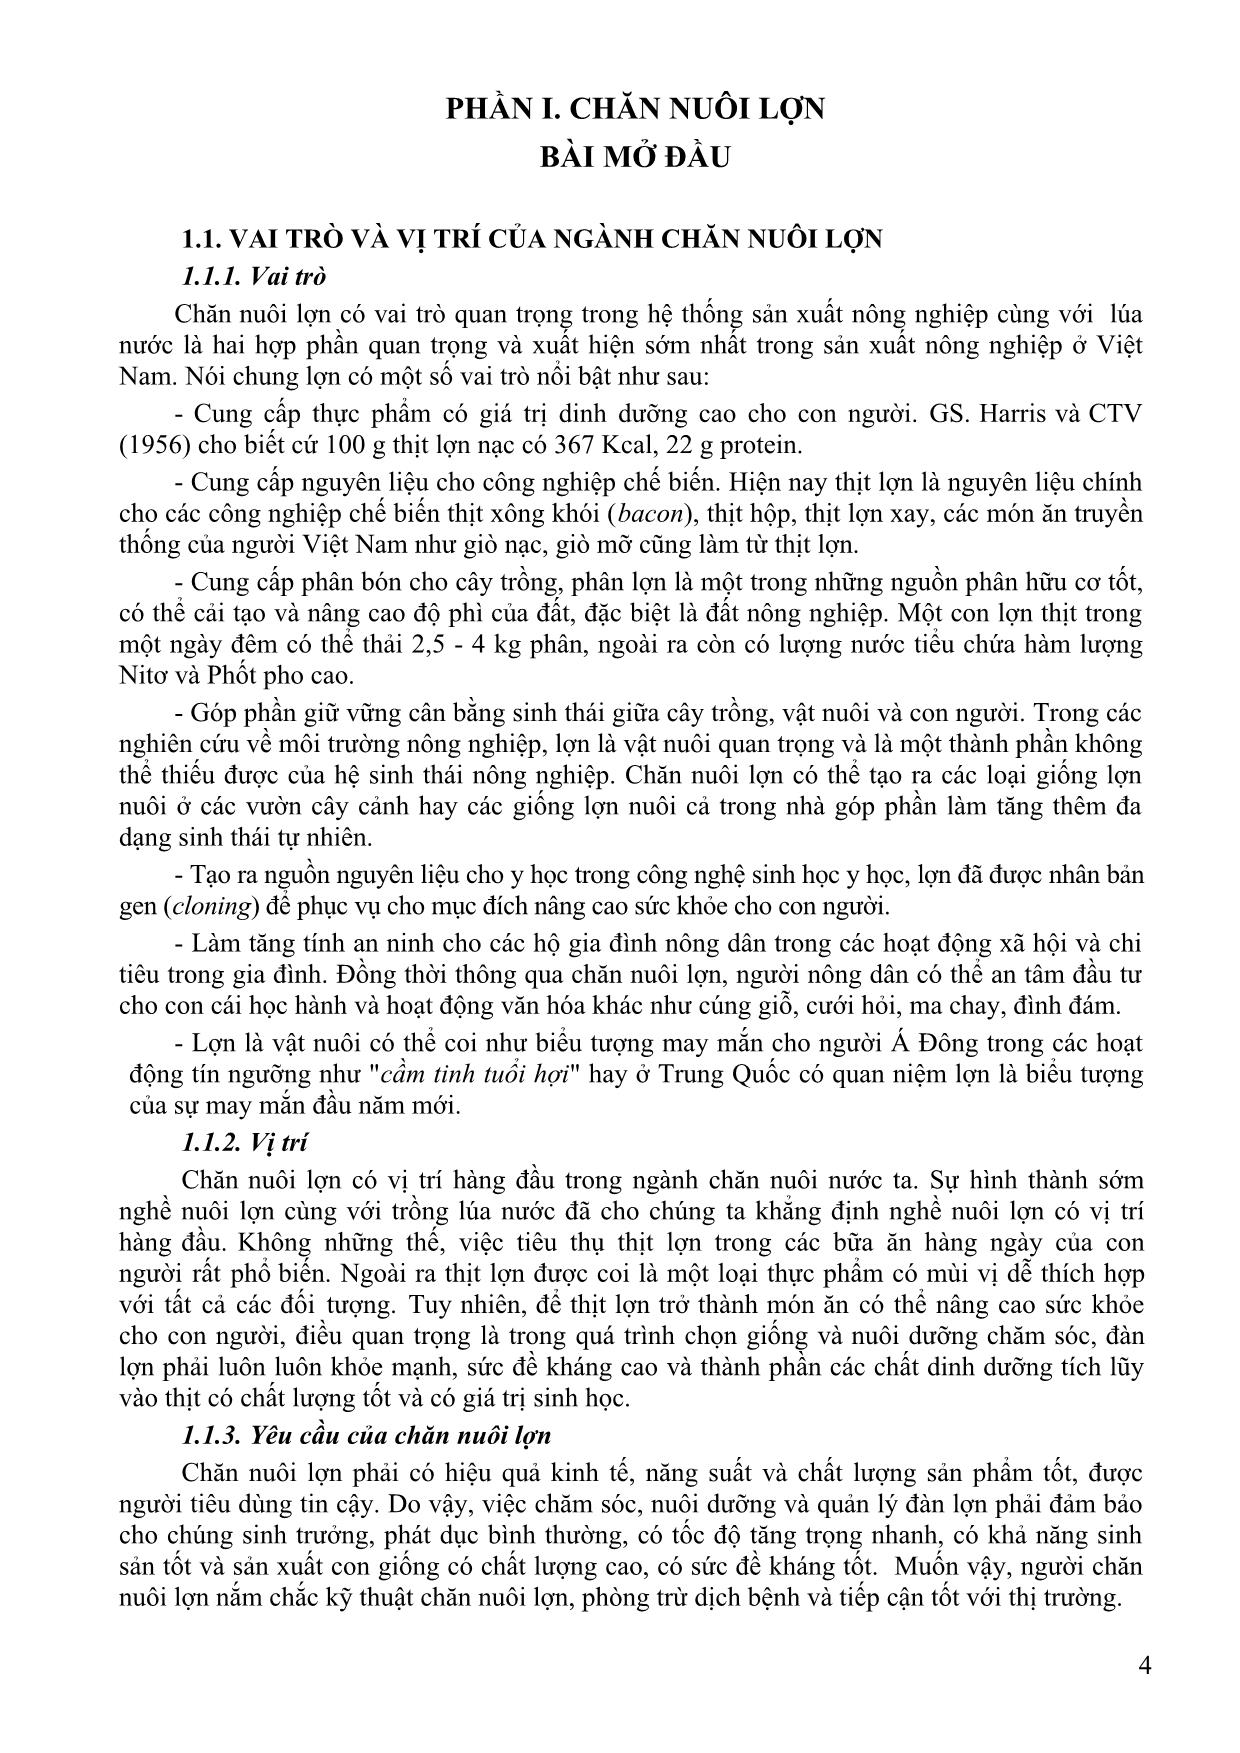 Bài giảng Chăn nuôi chuyên khoa - Dương Thị Thảo Chinh trang 3